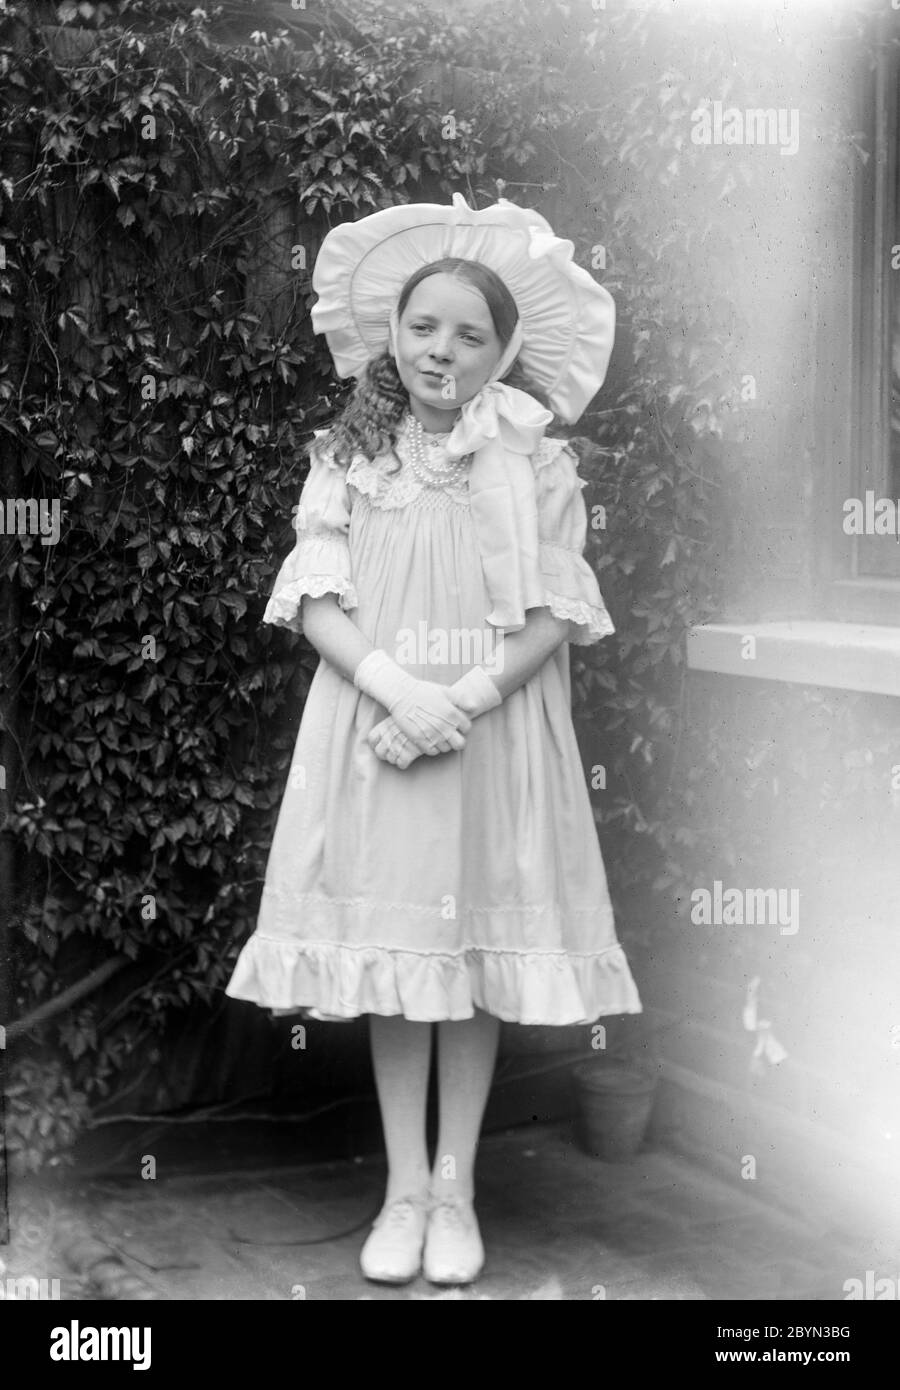 Ein altes englisches Schwarz-Weiß-Foto aus dem späten viktorianischen oder frühen Edwardianischen Zeitalter von einem jungen Mädchen, das Mode und Stil der Zeit zeigt. Stockfoto